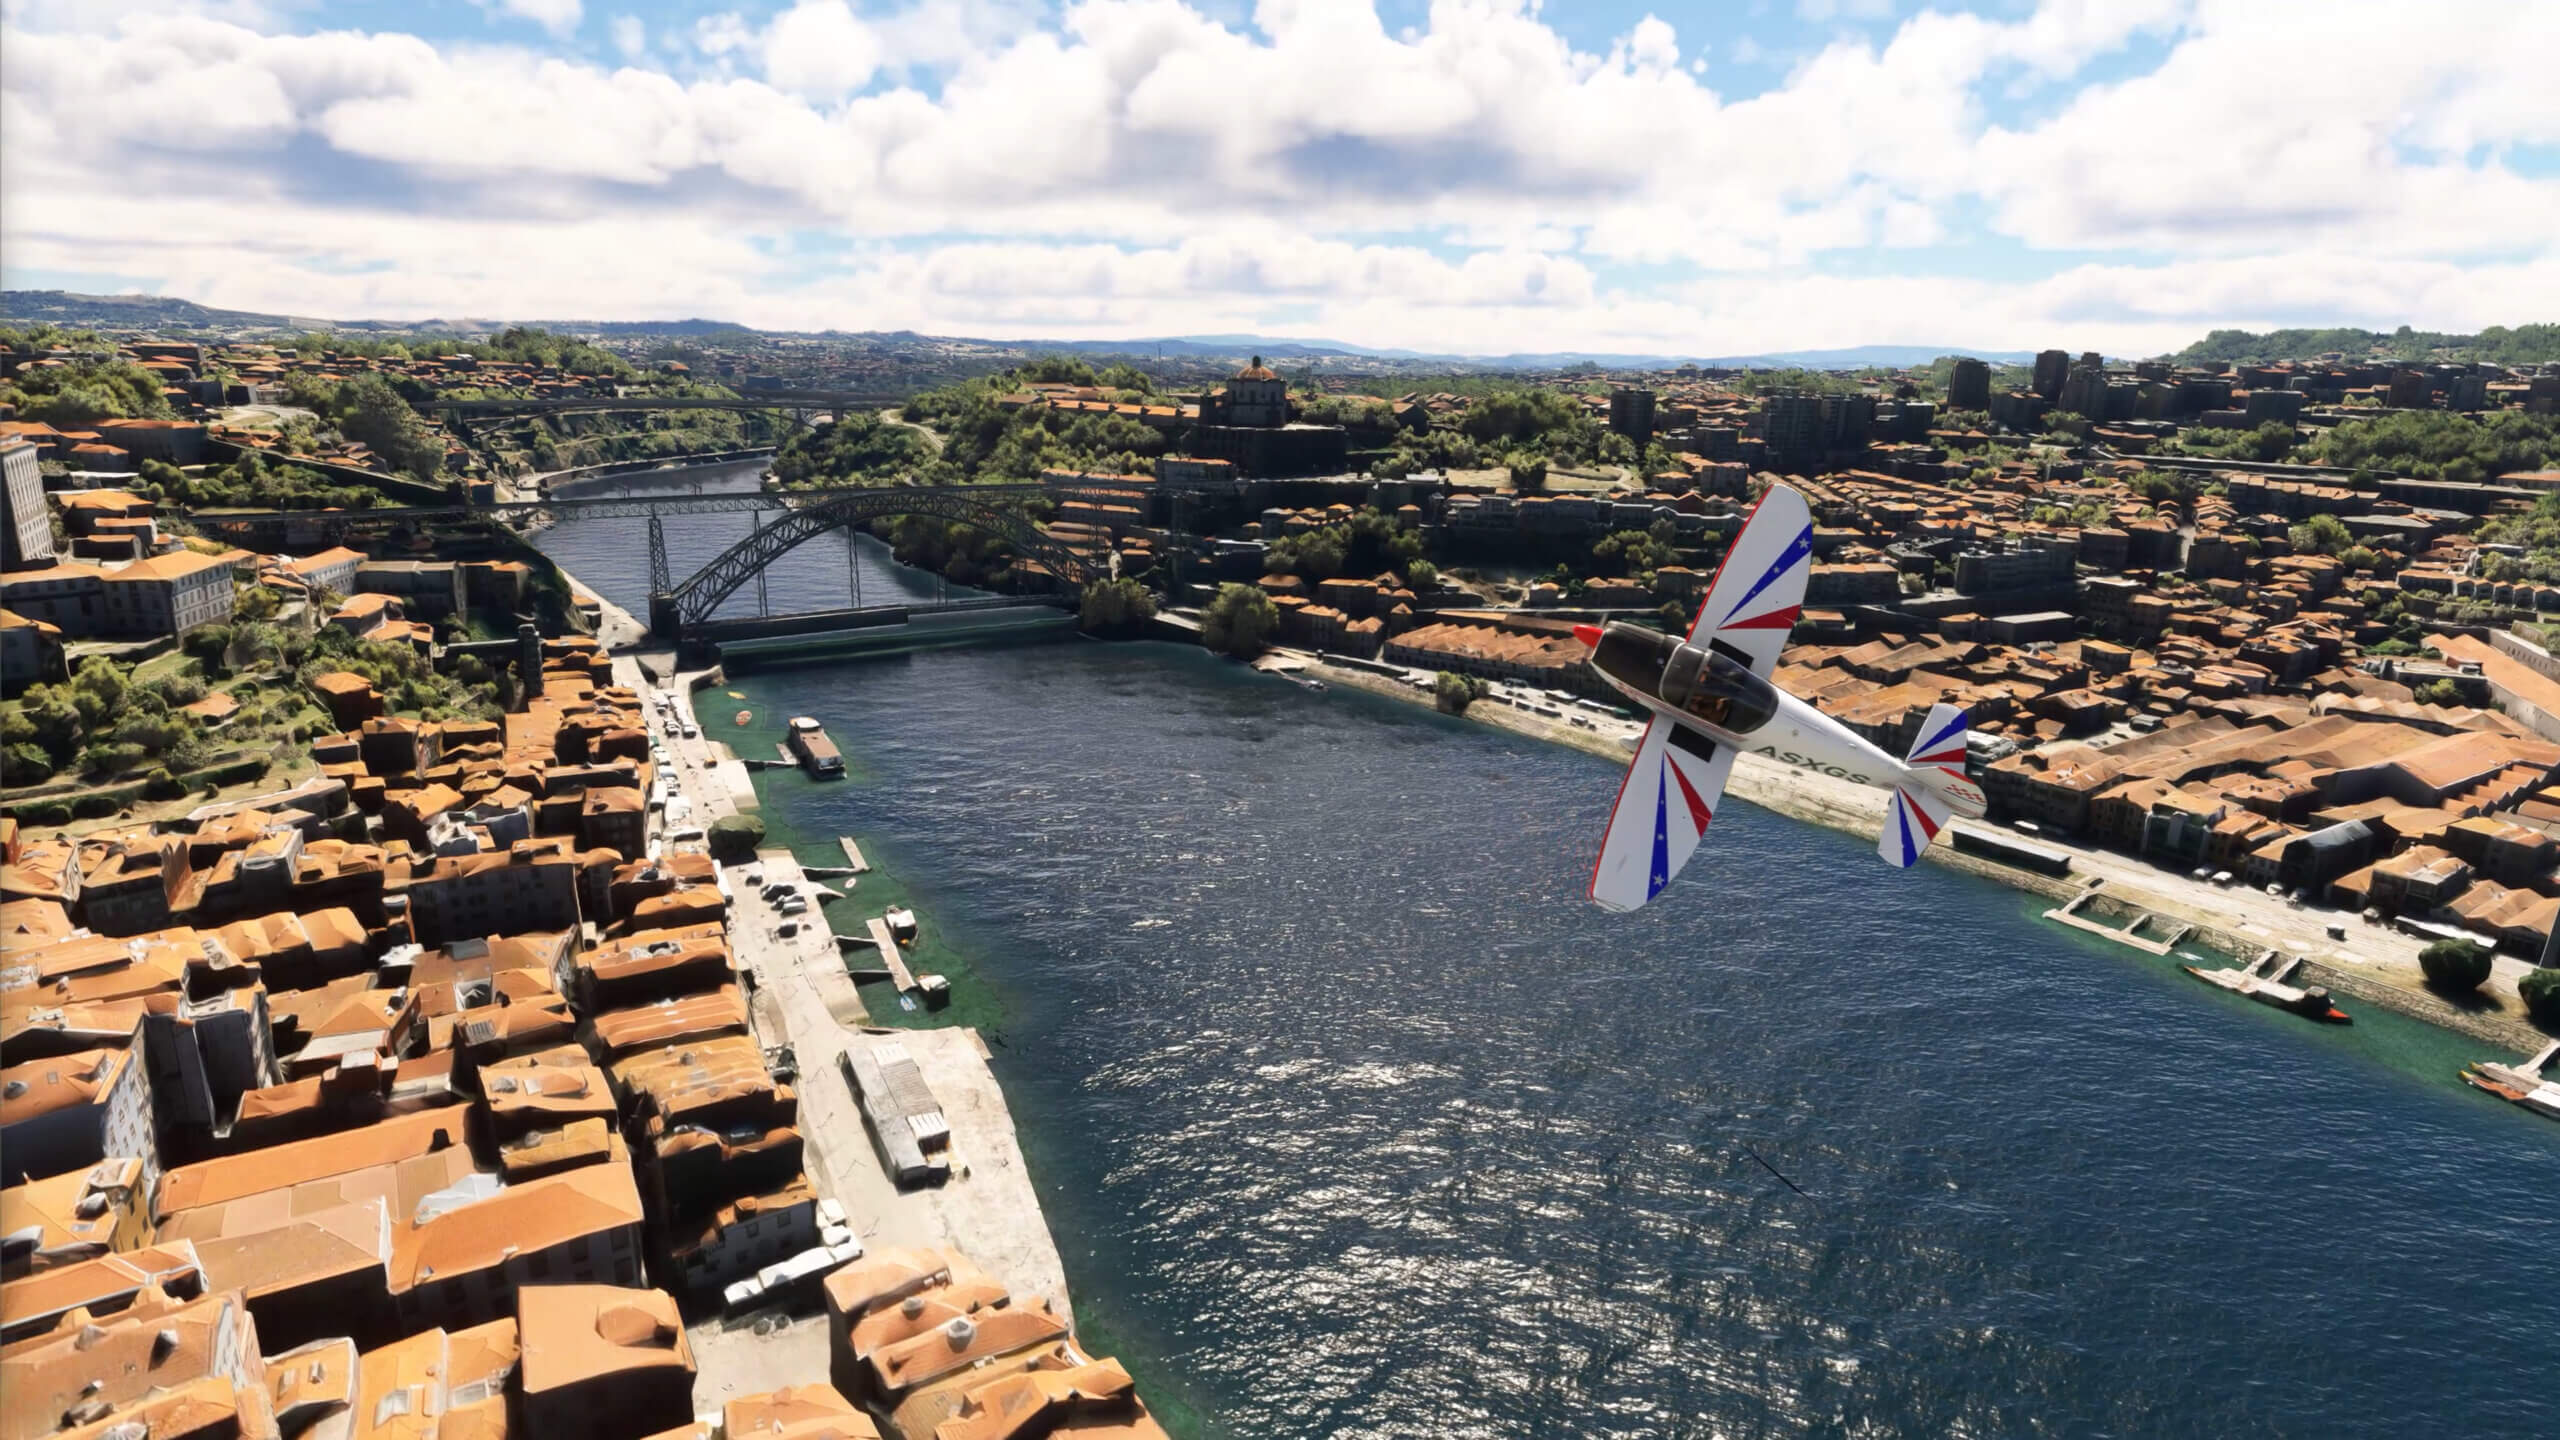 A Robin Cap10 flies over Porto.